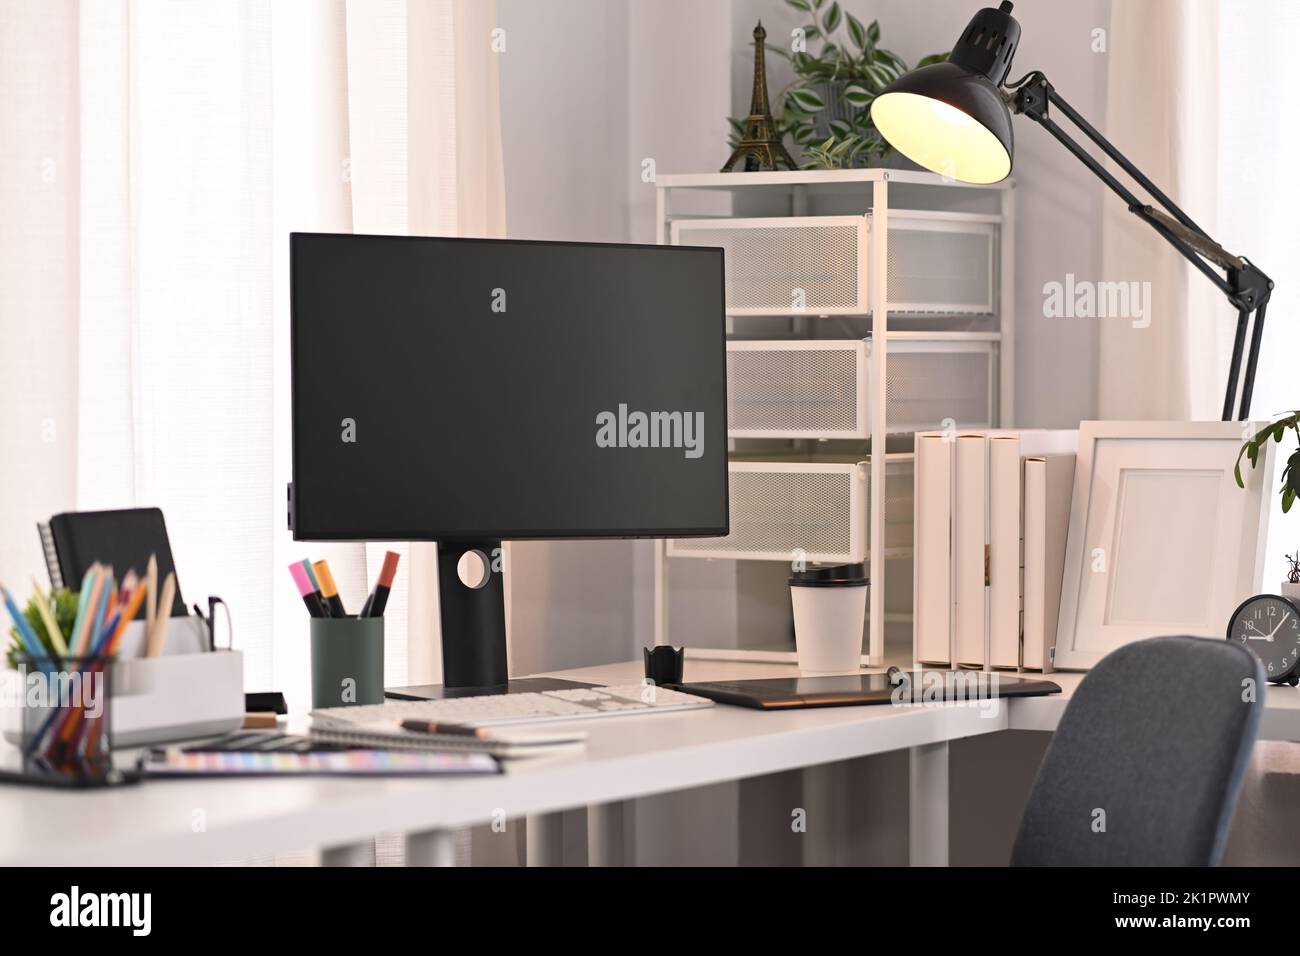 Uno schermo vuoto del calcolatore, cancelleria e lampada sul tavolo bianco in interno domestico moderno dell'ufficio Foto Stock